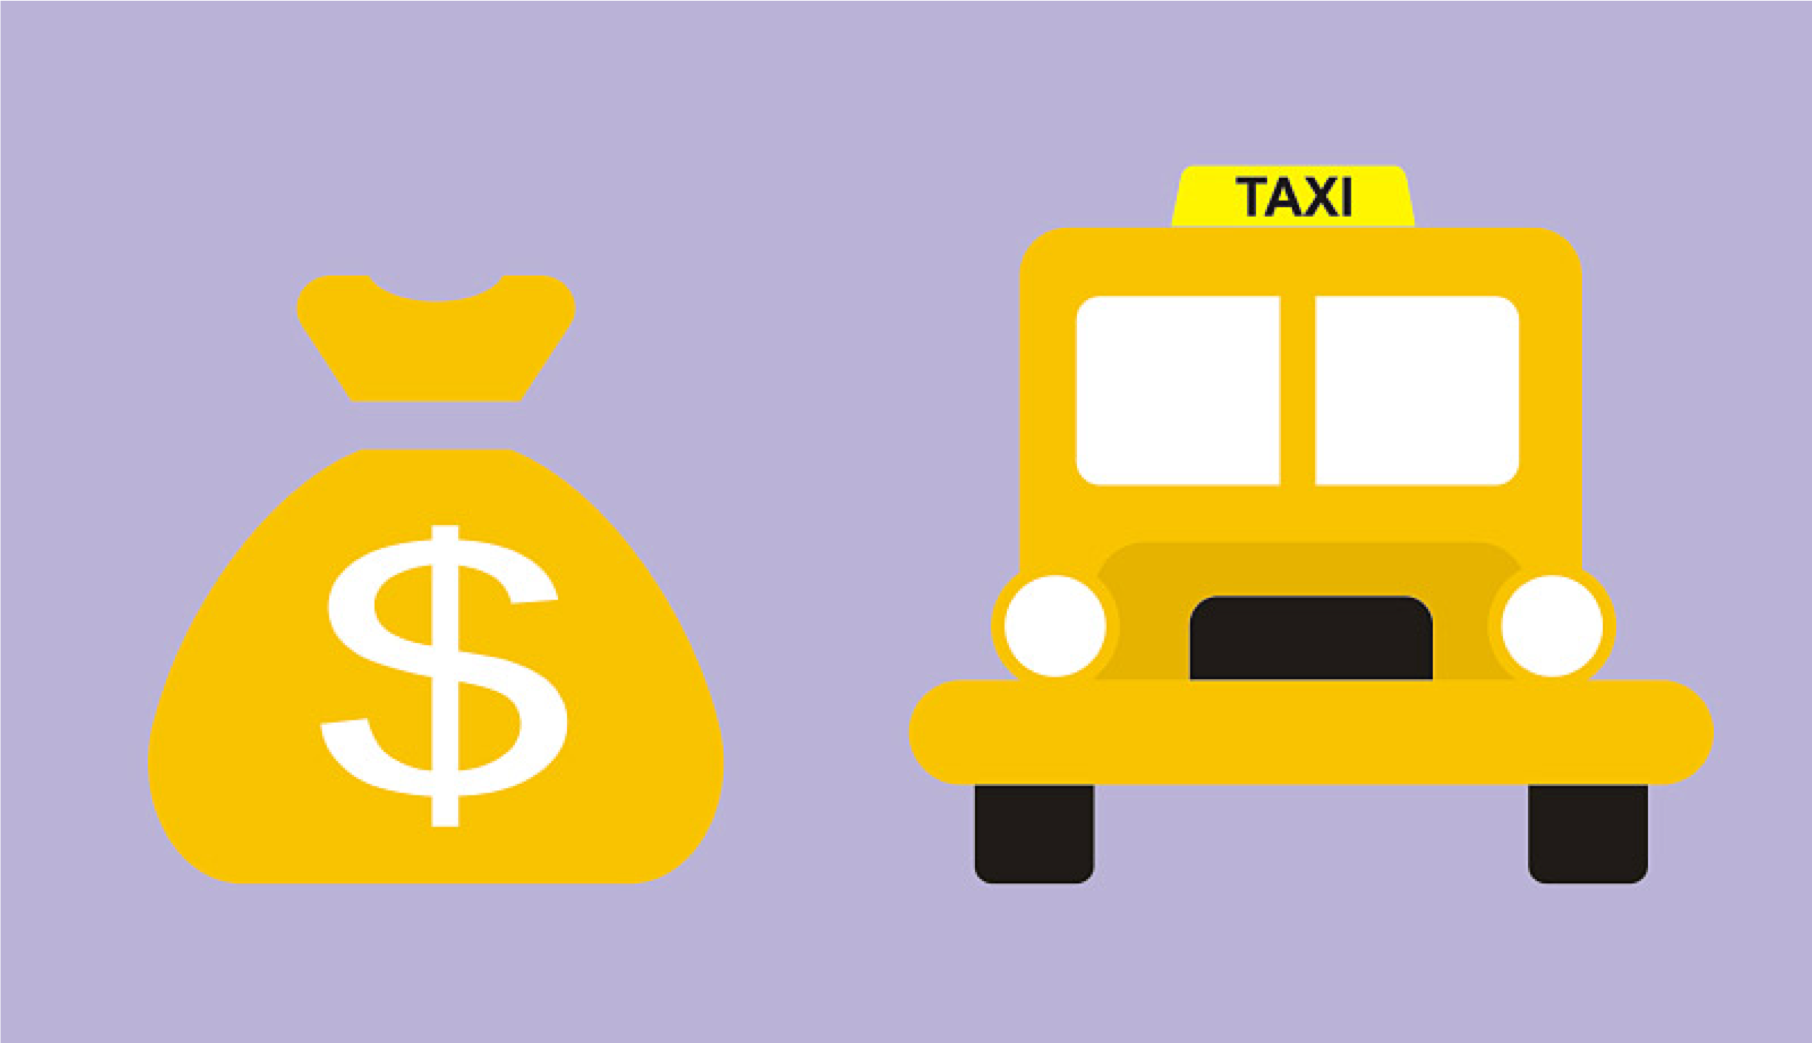 Машины лизинг для такси. Планета такси. Такси в кредит. Купить такси в кредит